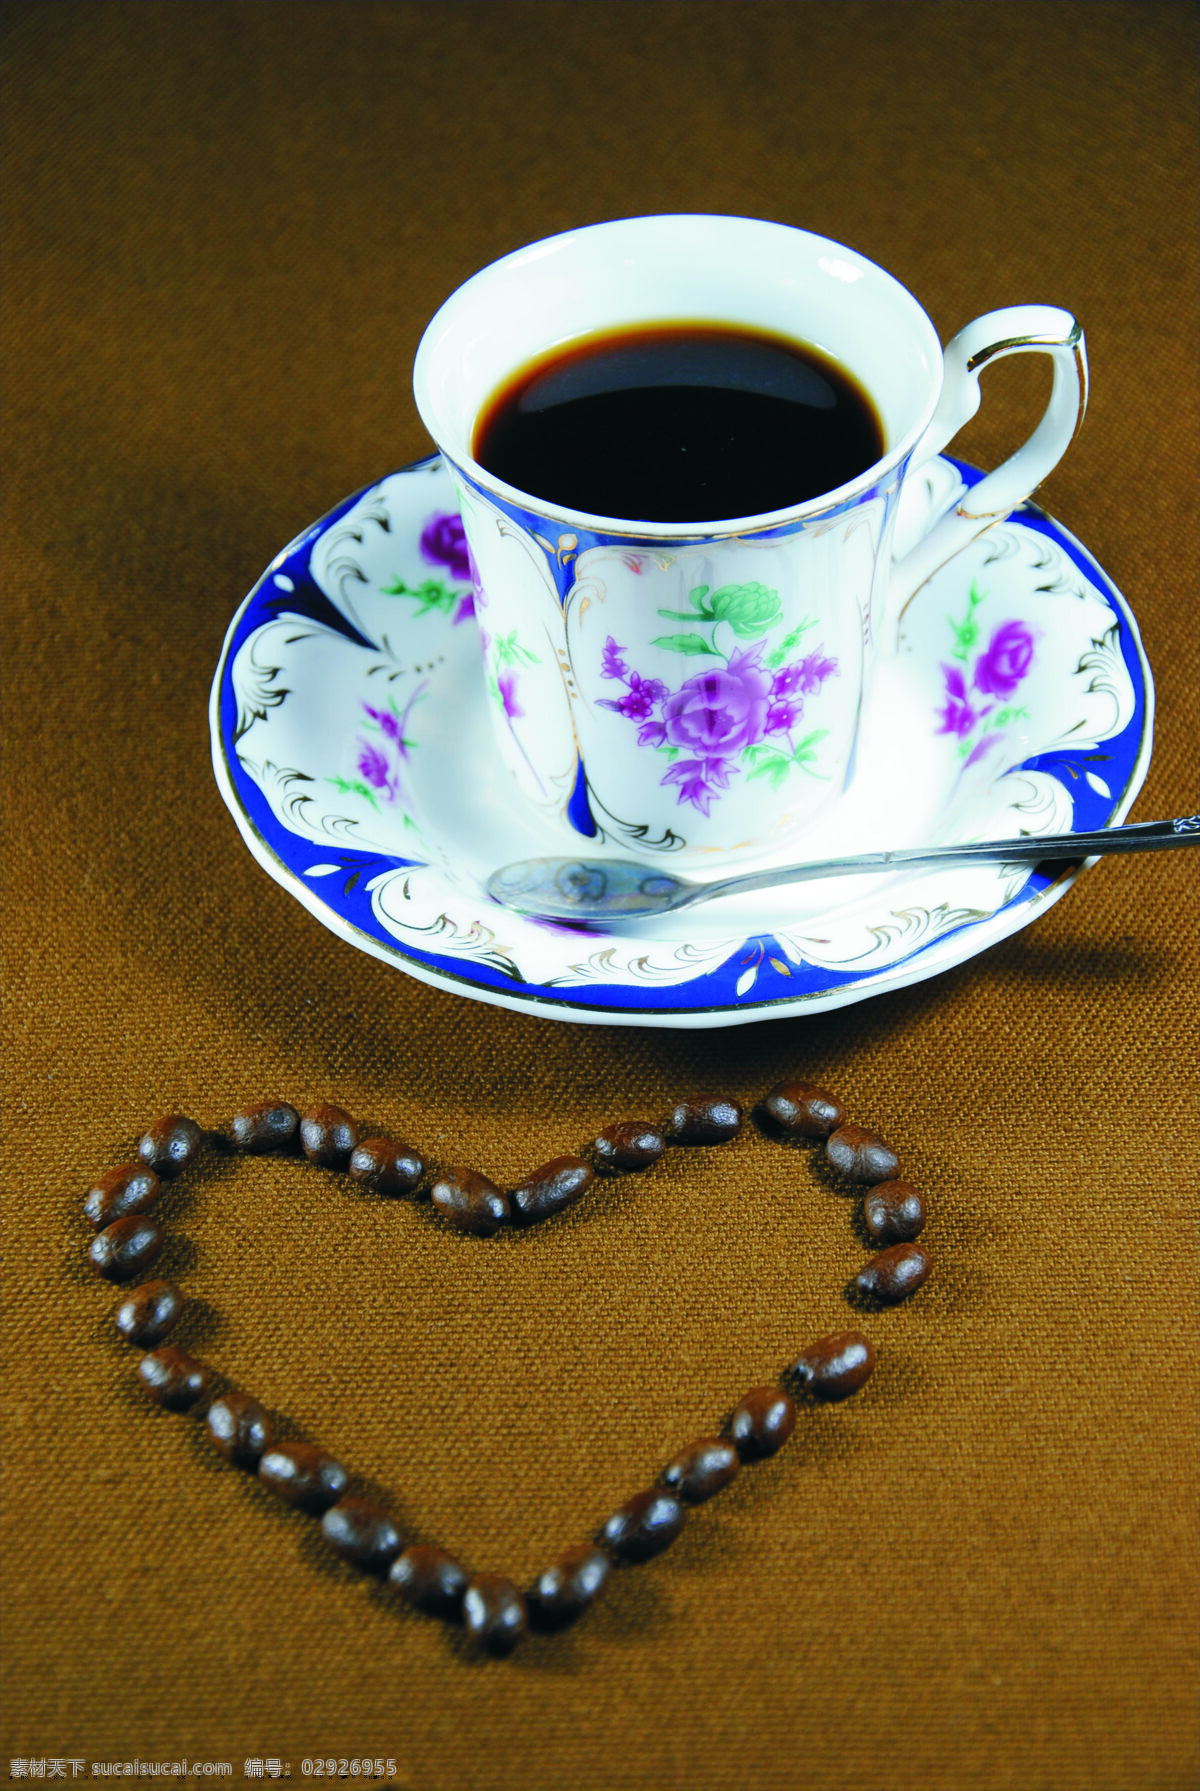 邦奇蓝山咖啡 咖啡 咖啡豆 咖啡杯 蓝山咖啡 邦奇蓝山 西餐美食 餐饮美食